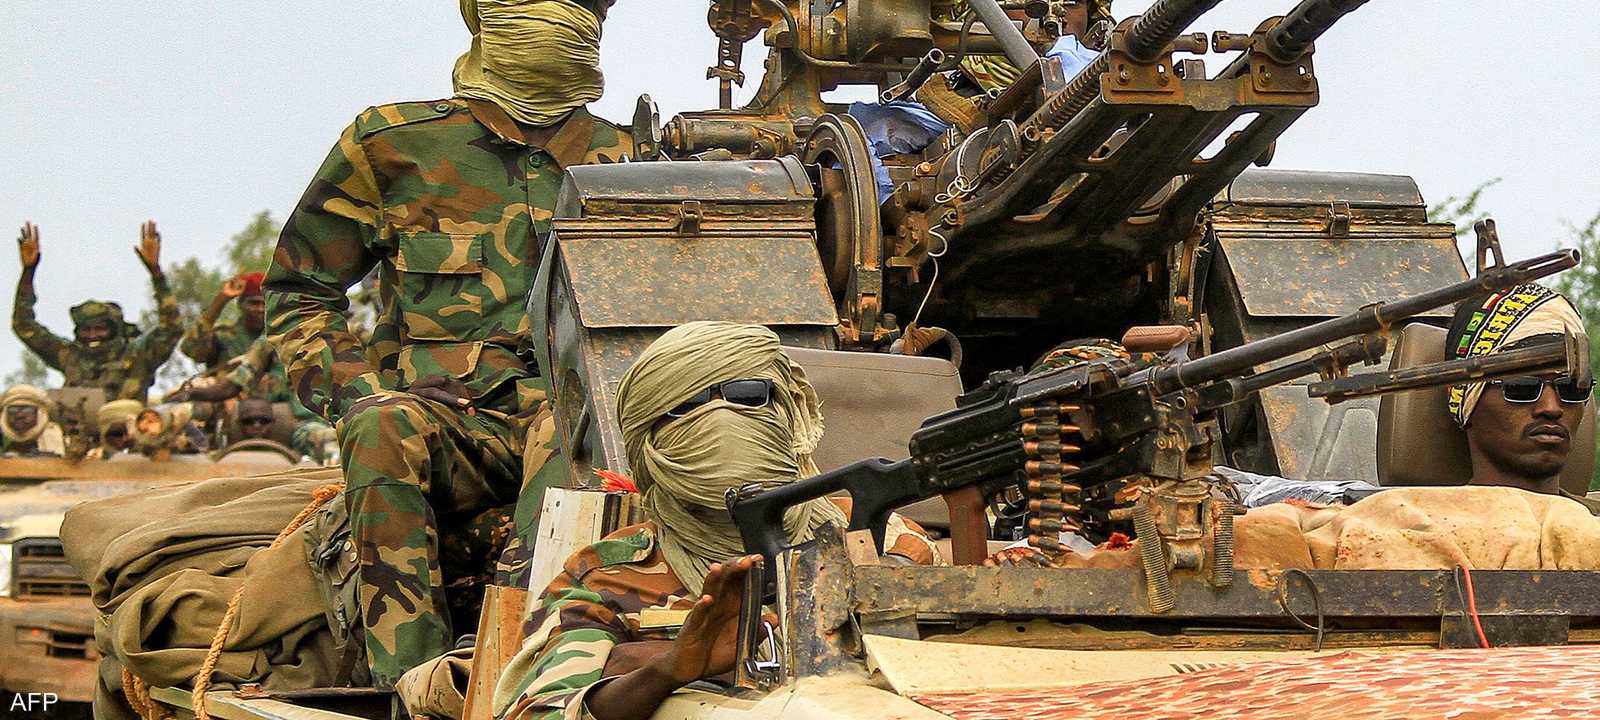 الحرب المستمرة منذ 10 أشهر دمرت السودان